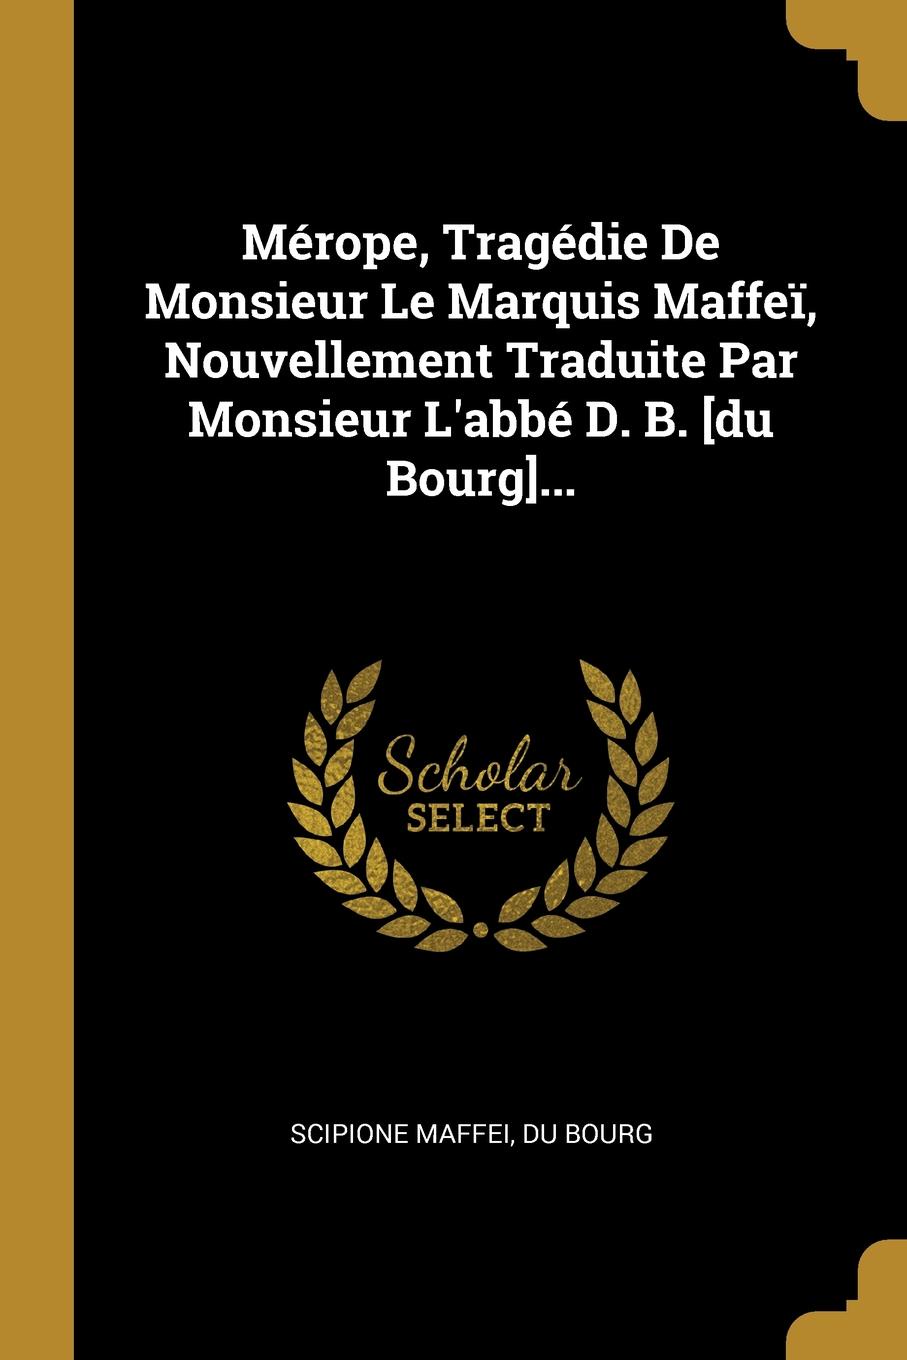 Merope, Tragedie De Monsieur Le Marquis Maffei, Nouvellement Traduite Par Monsieur L.abbe D. B. .du Bourg....